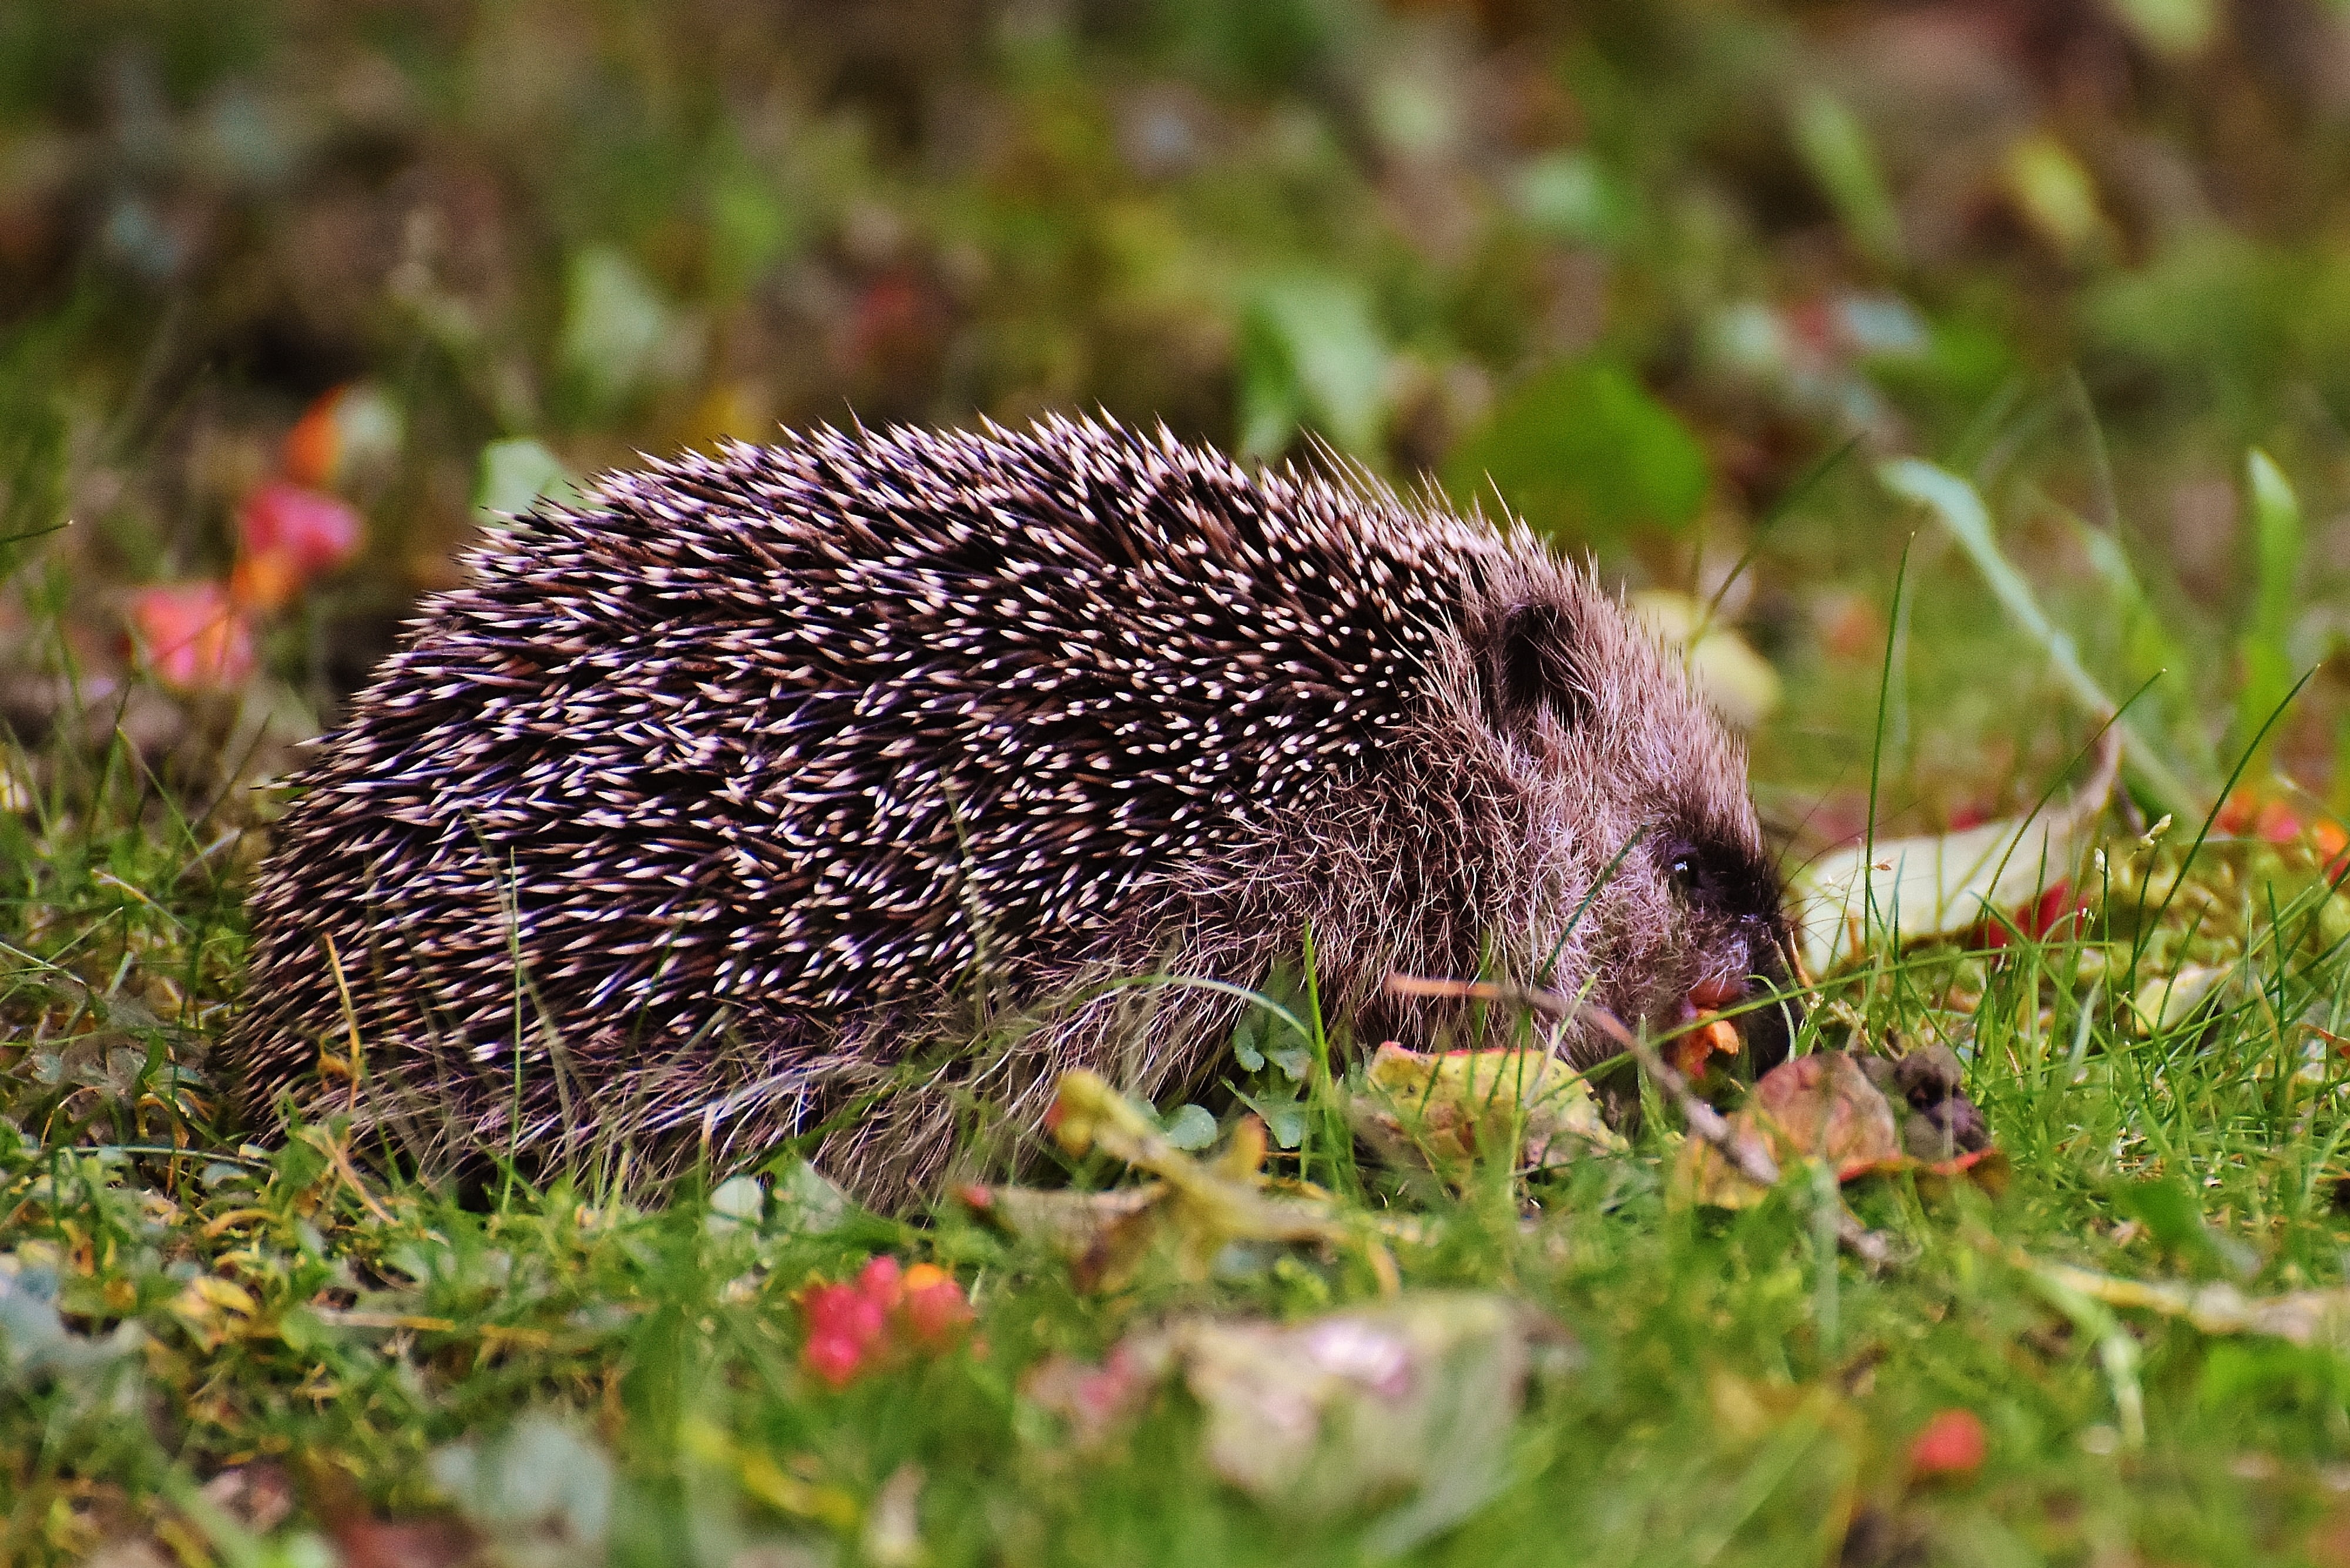 hedgehog child, young hedgehog, animal, spur, nature, garden